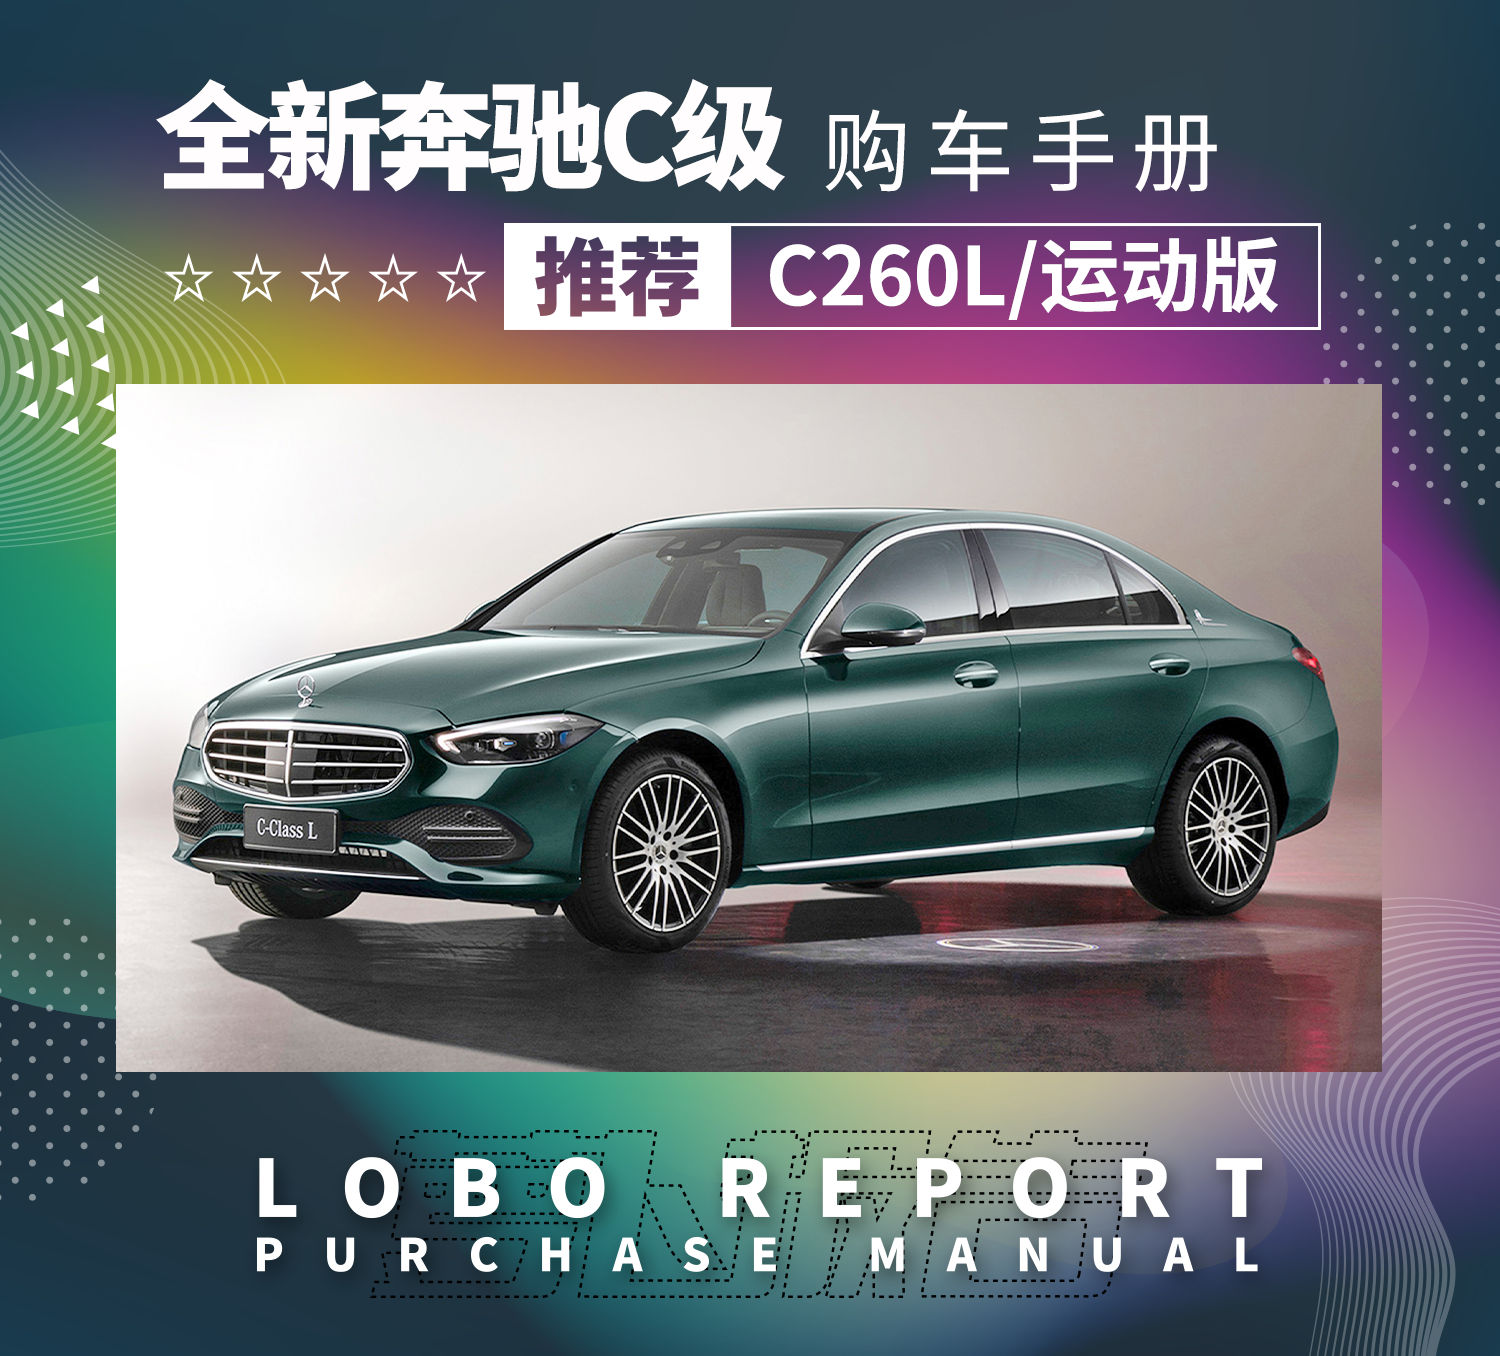 奔驰AMG GLE 53 轿跑SUV上市 售价102.88万元_凤凰网汽车_凤凰网